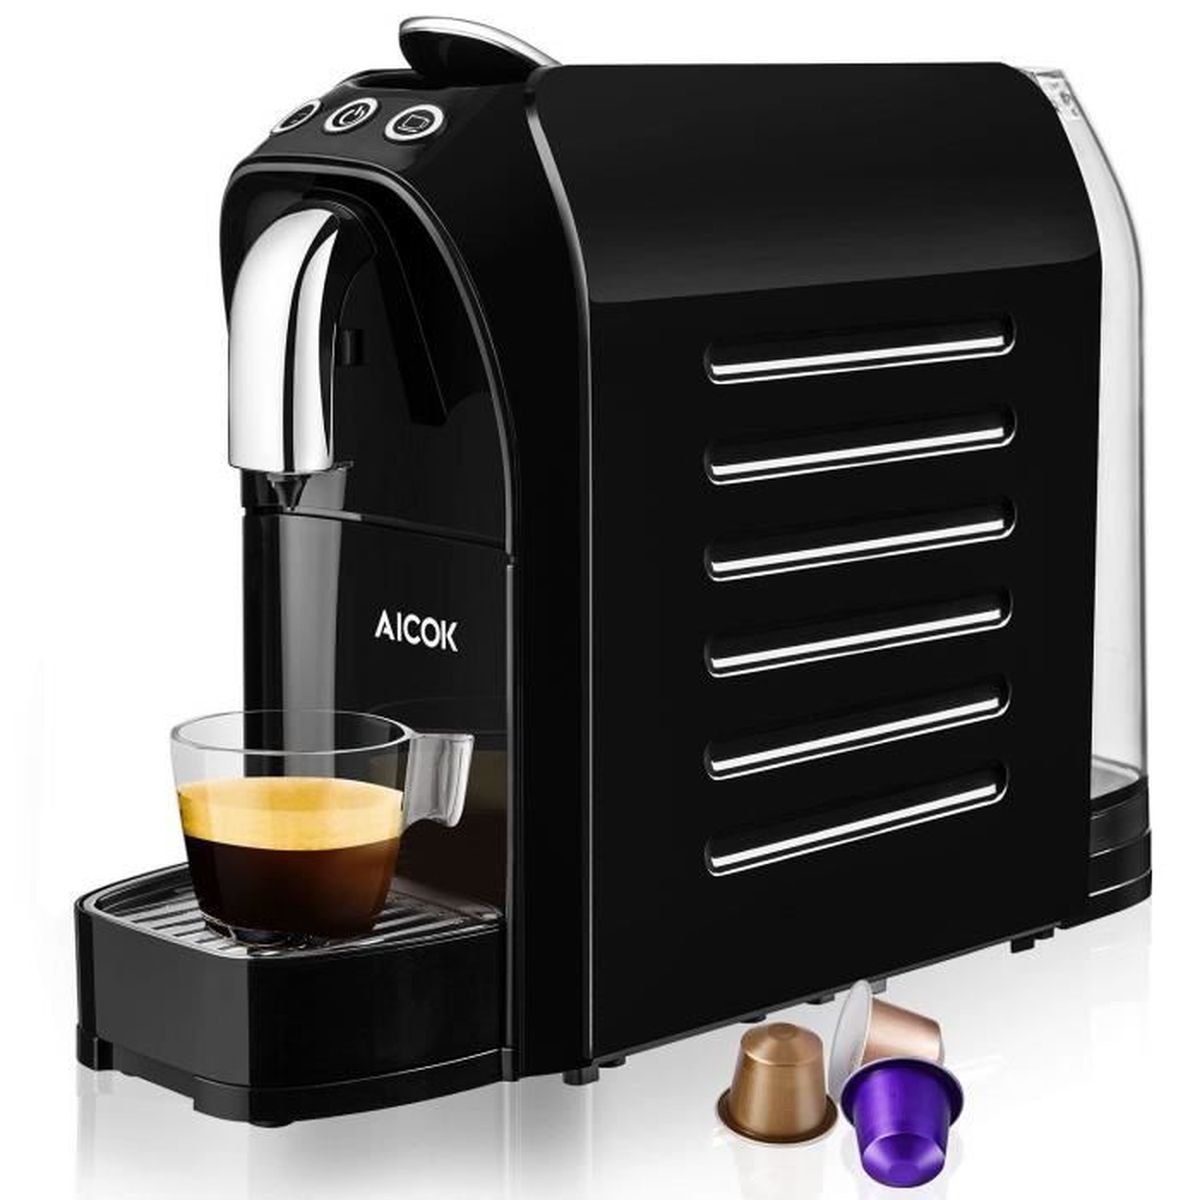 Mini-machine à café électrique portable Aicok compatible avec café moulu / capsule bureau camping etc. 150 ml, blanc ivoire pour café expresso avec filtre maison - cafetière pour voiture 